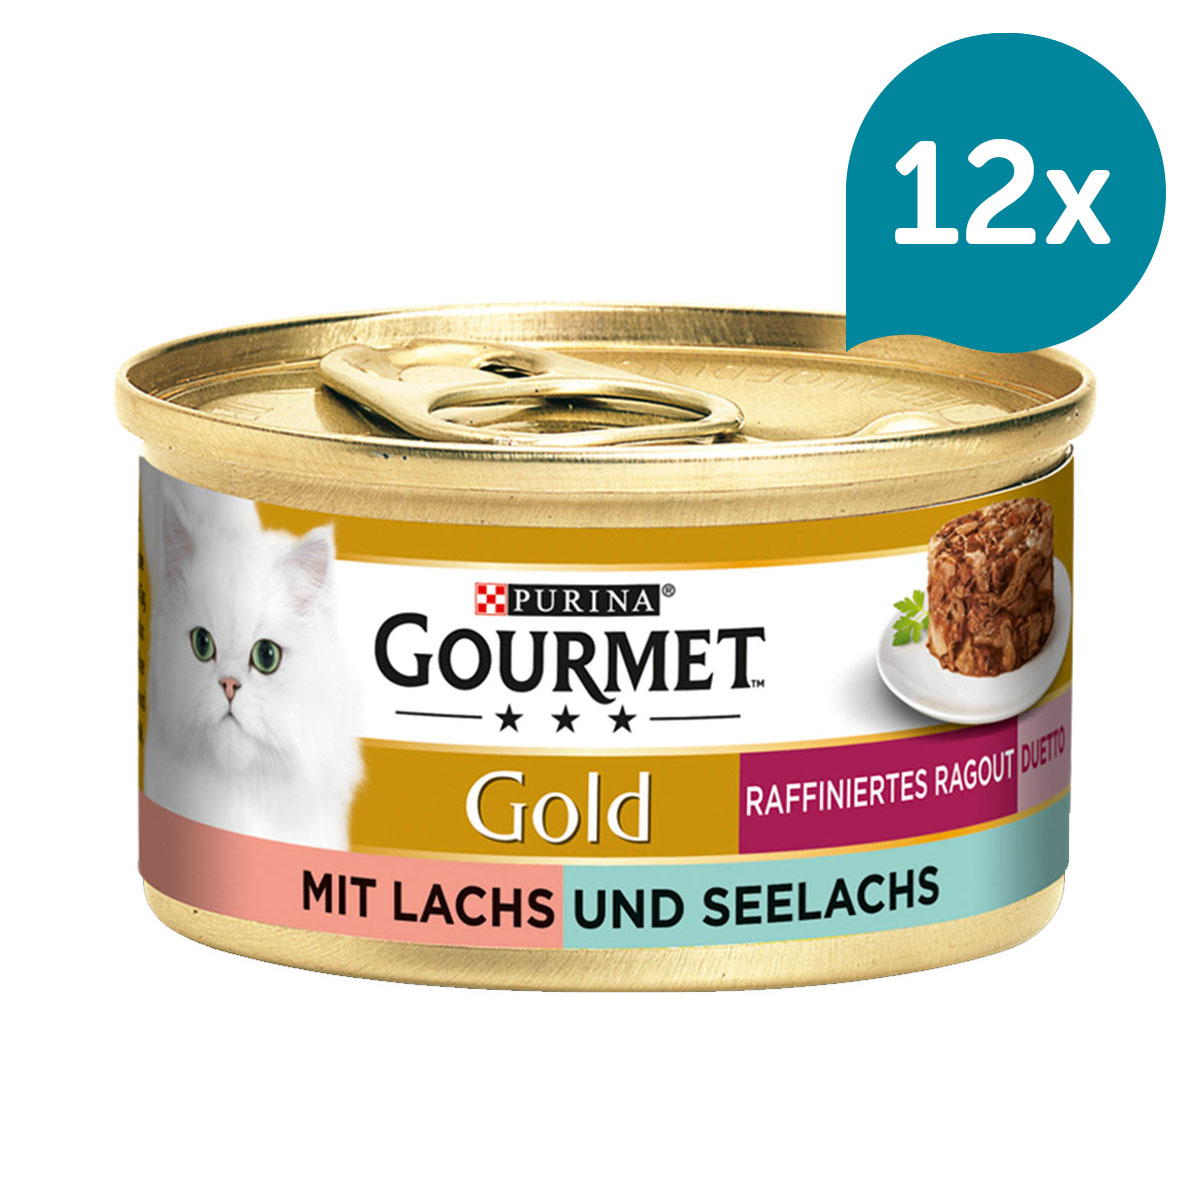 GOURMET Gold Raffiniertes Ragout Duetto Lachs & Seelachs 12x85g